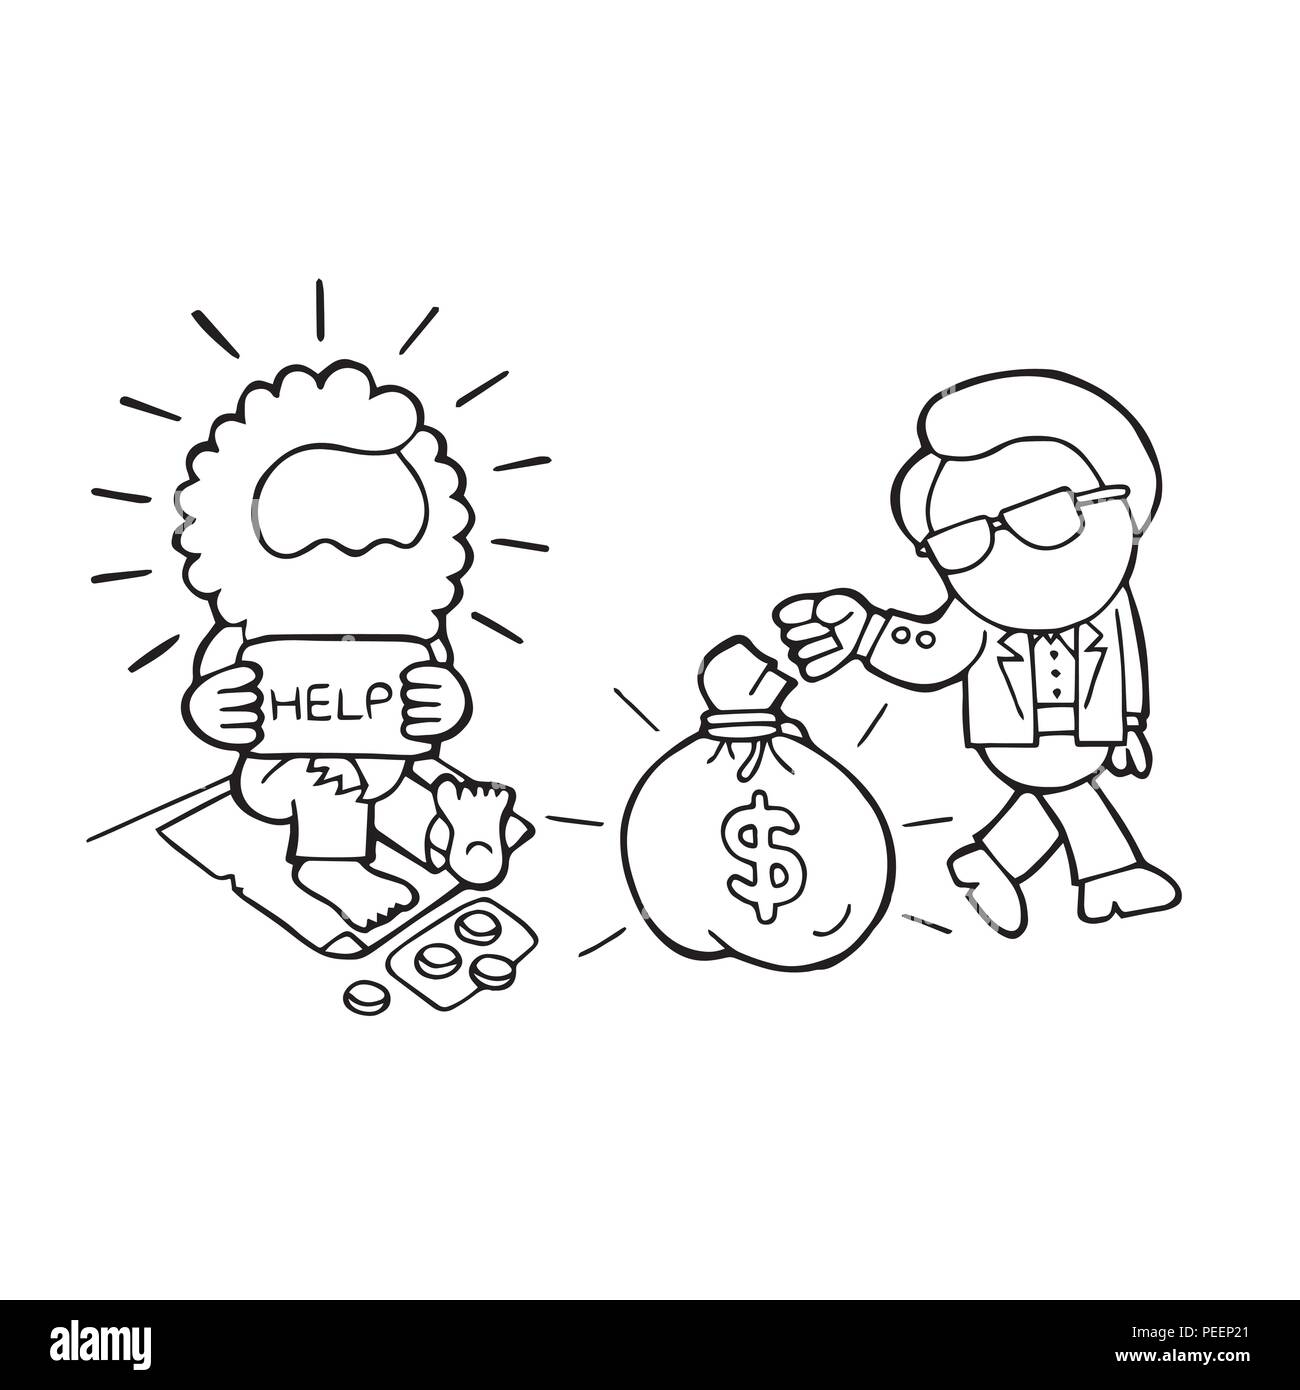 Vector Ilustración Cómic Dibujado A Mano De Hombre Rico Dando La Bolsa De Dinero A Las Personas 3699